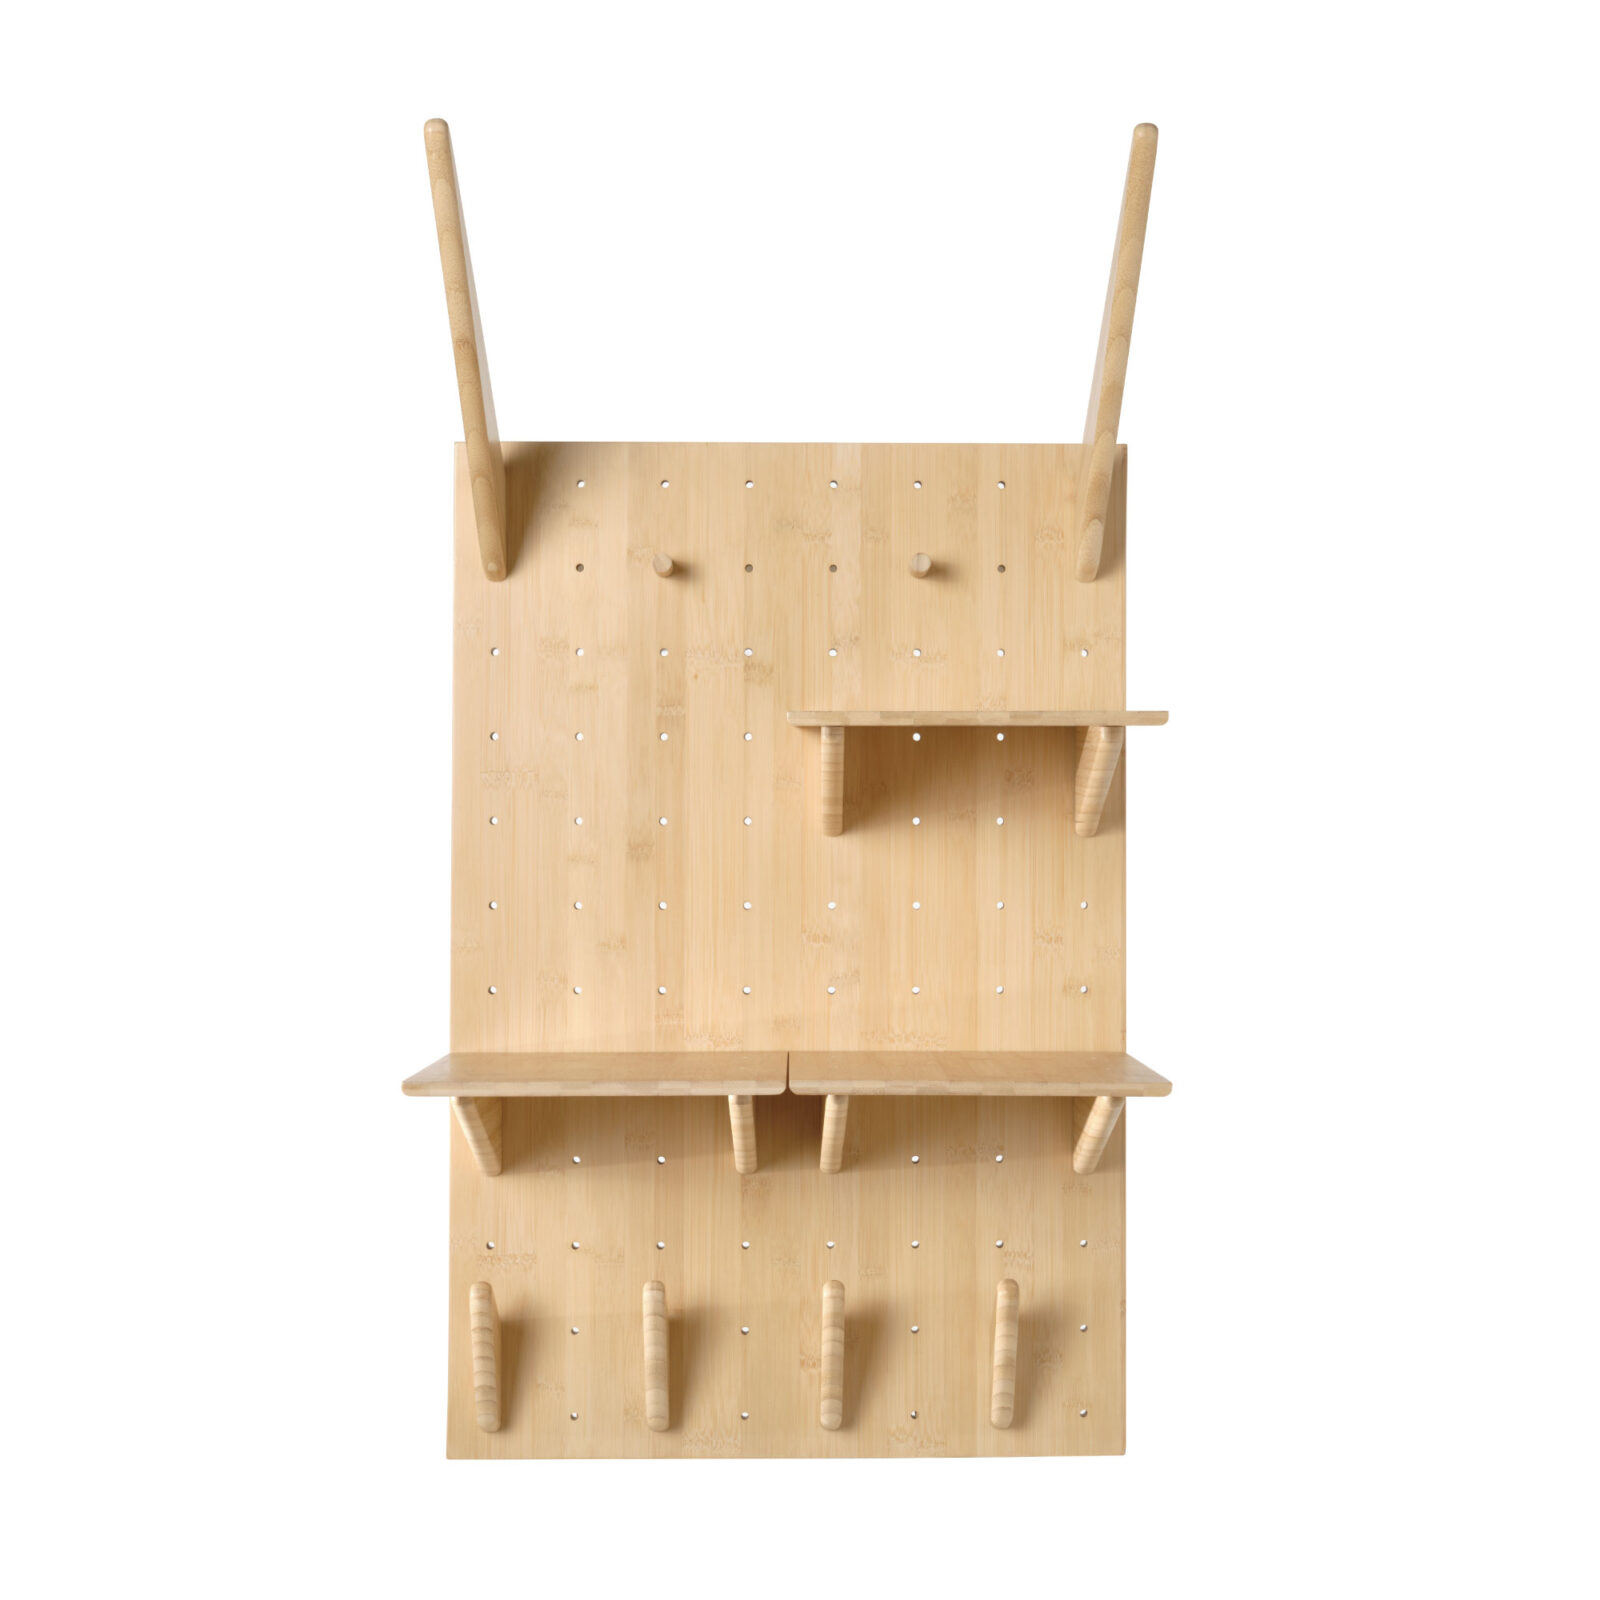 IKEAの竹製有孔ボード